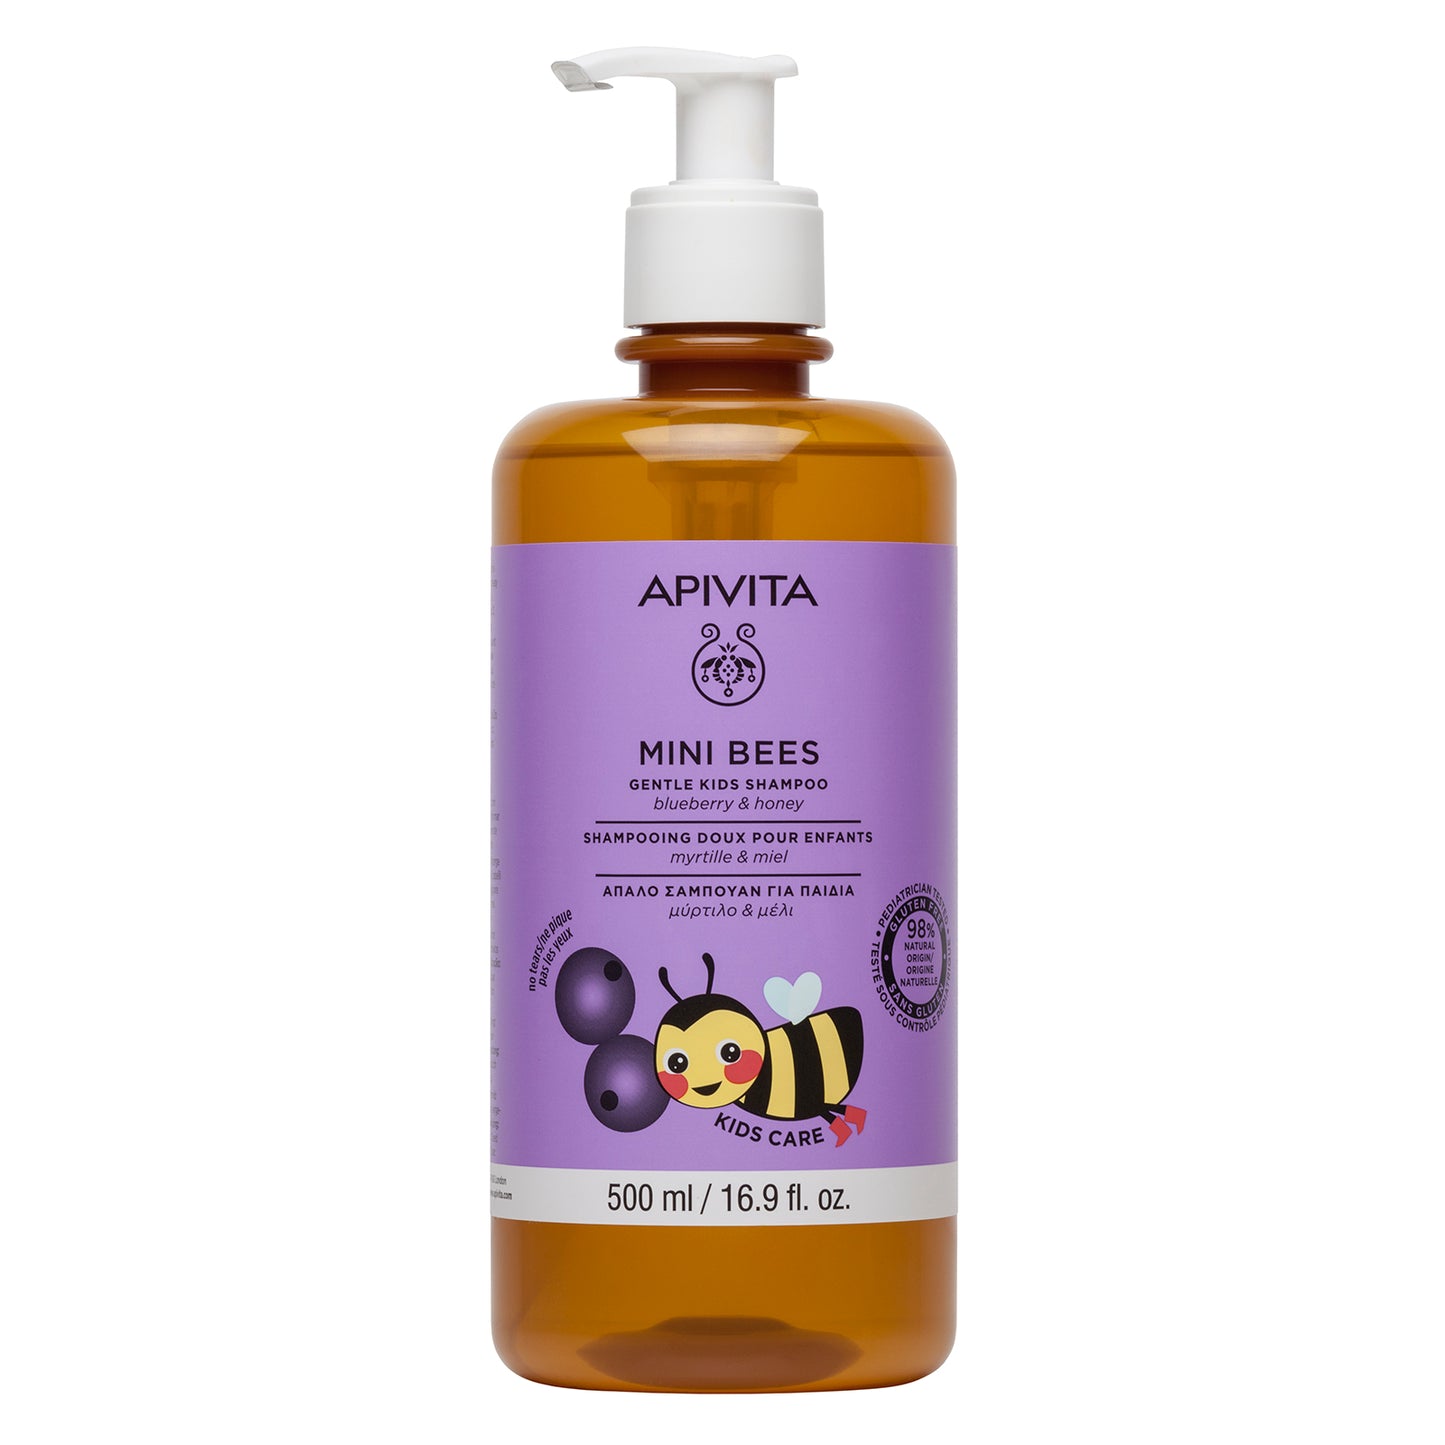 Apivita - Mini Bees kids shampoo 500ml